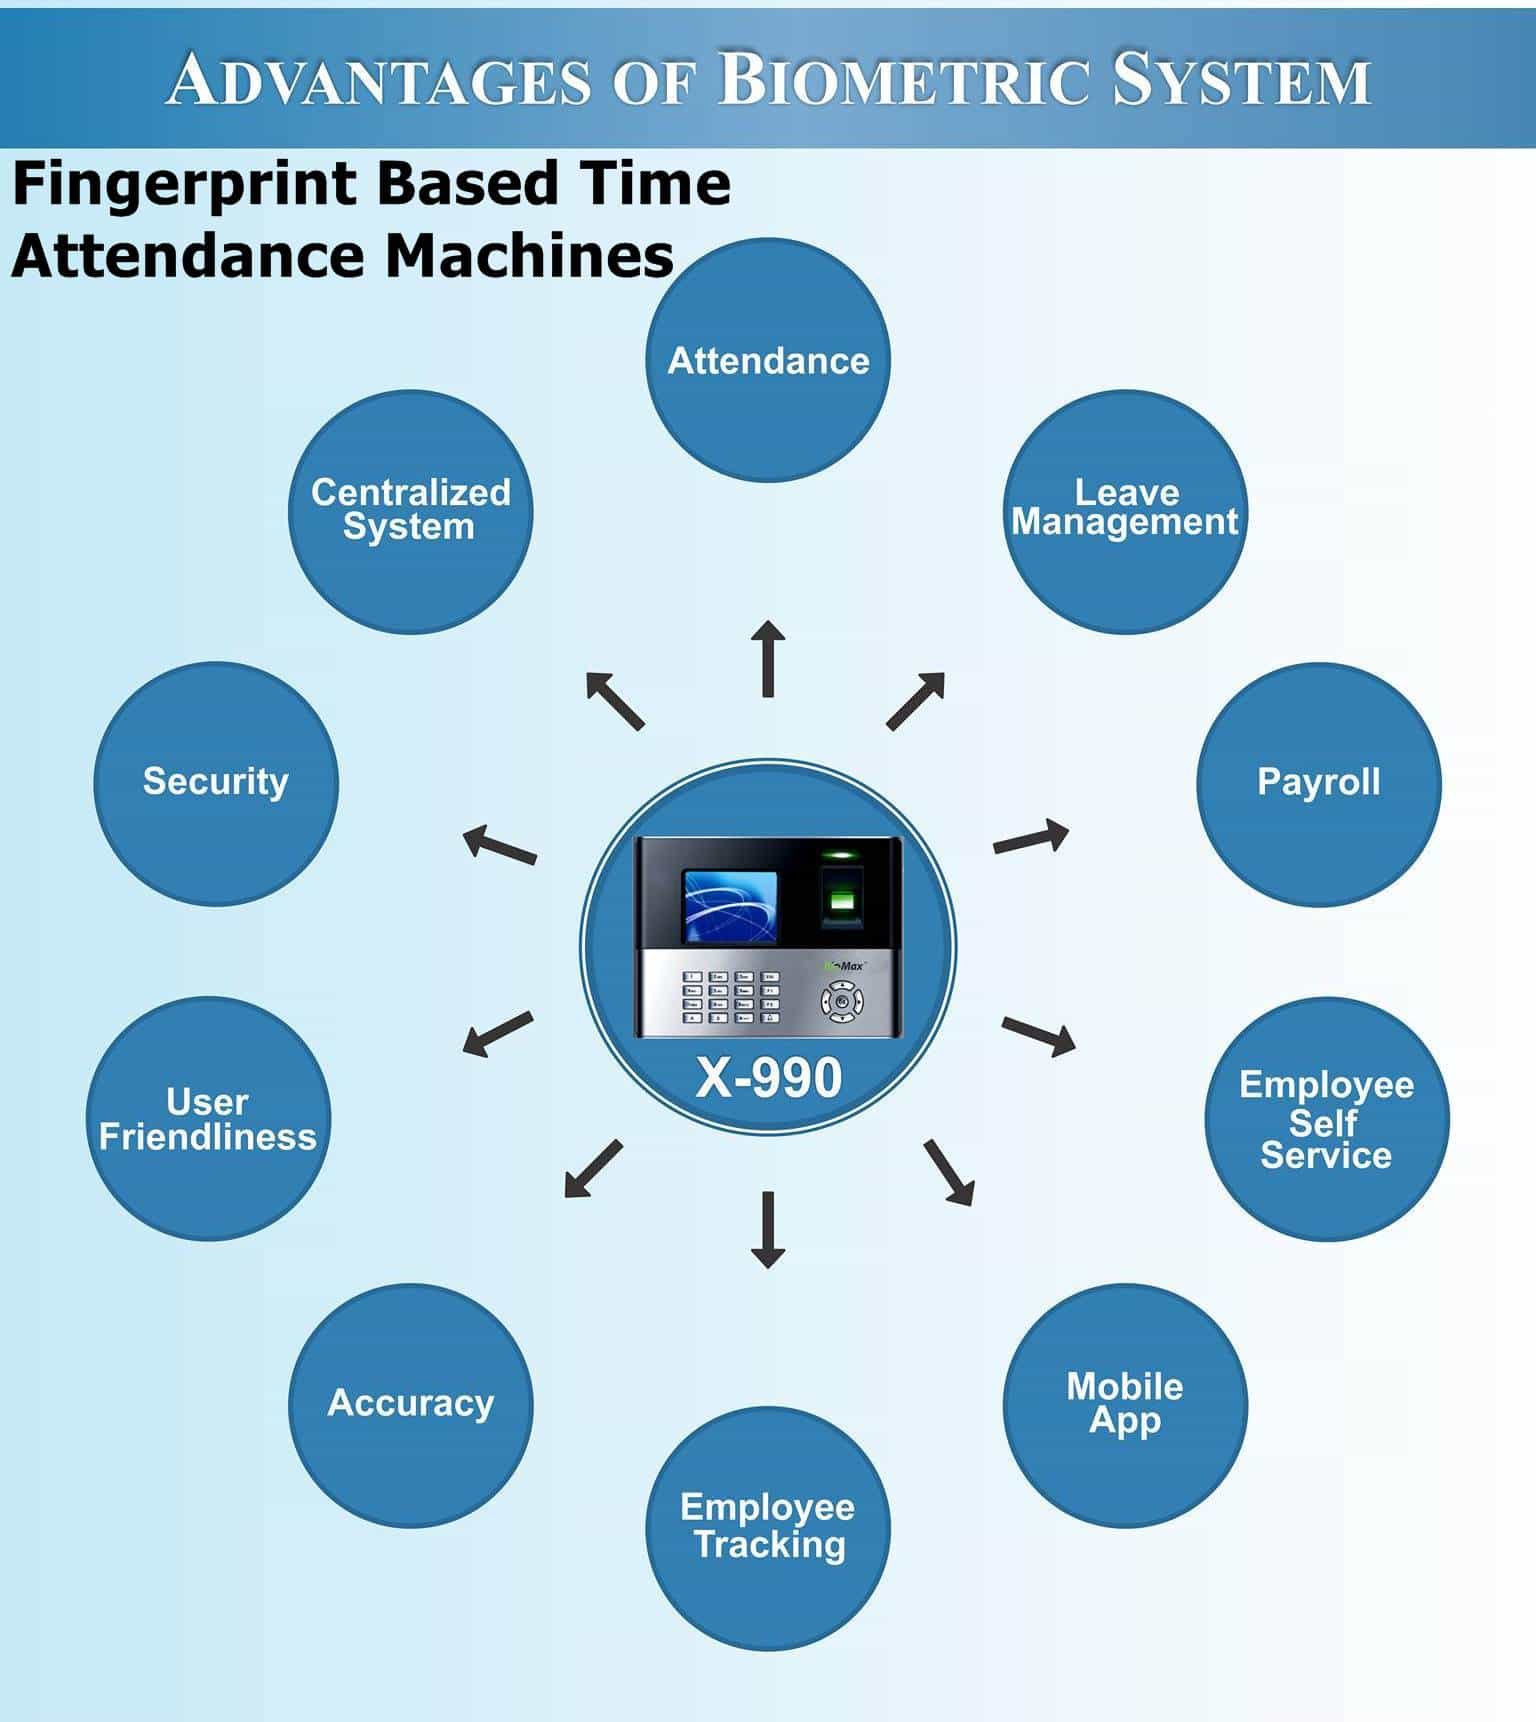 Fingerprint Based Time Attendance Machines